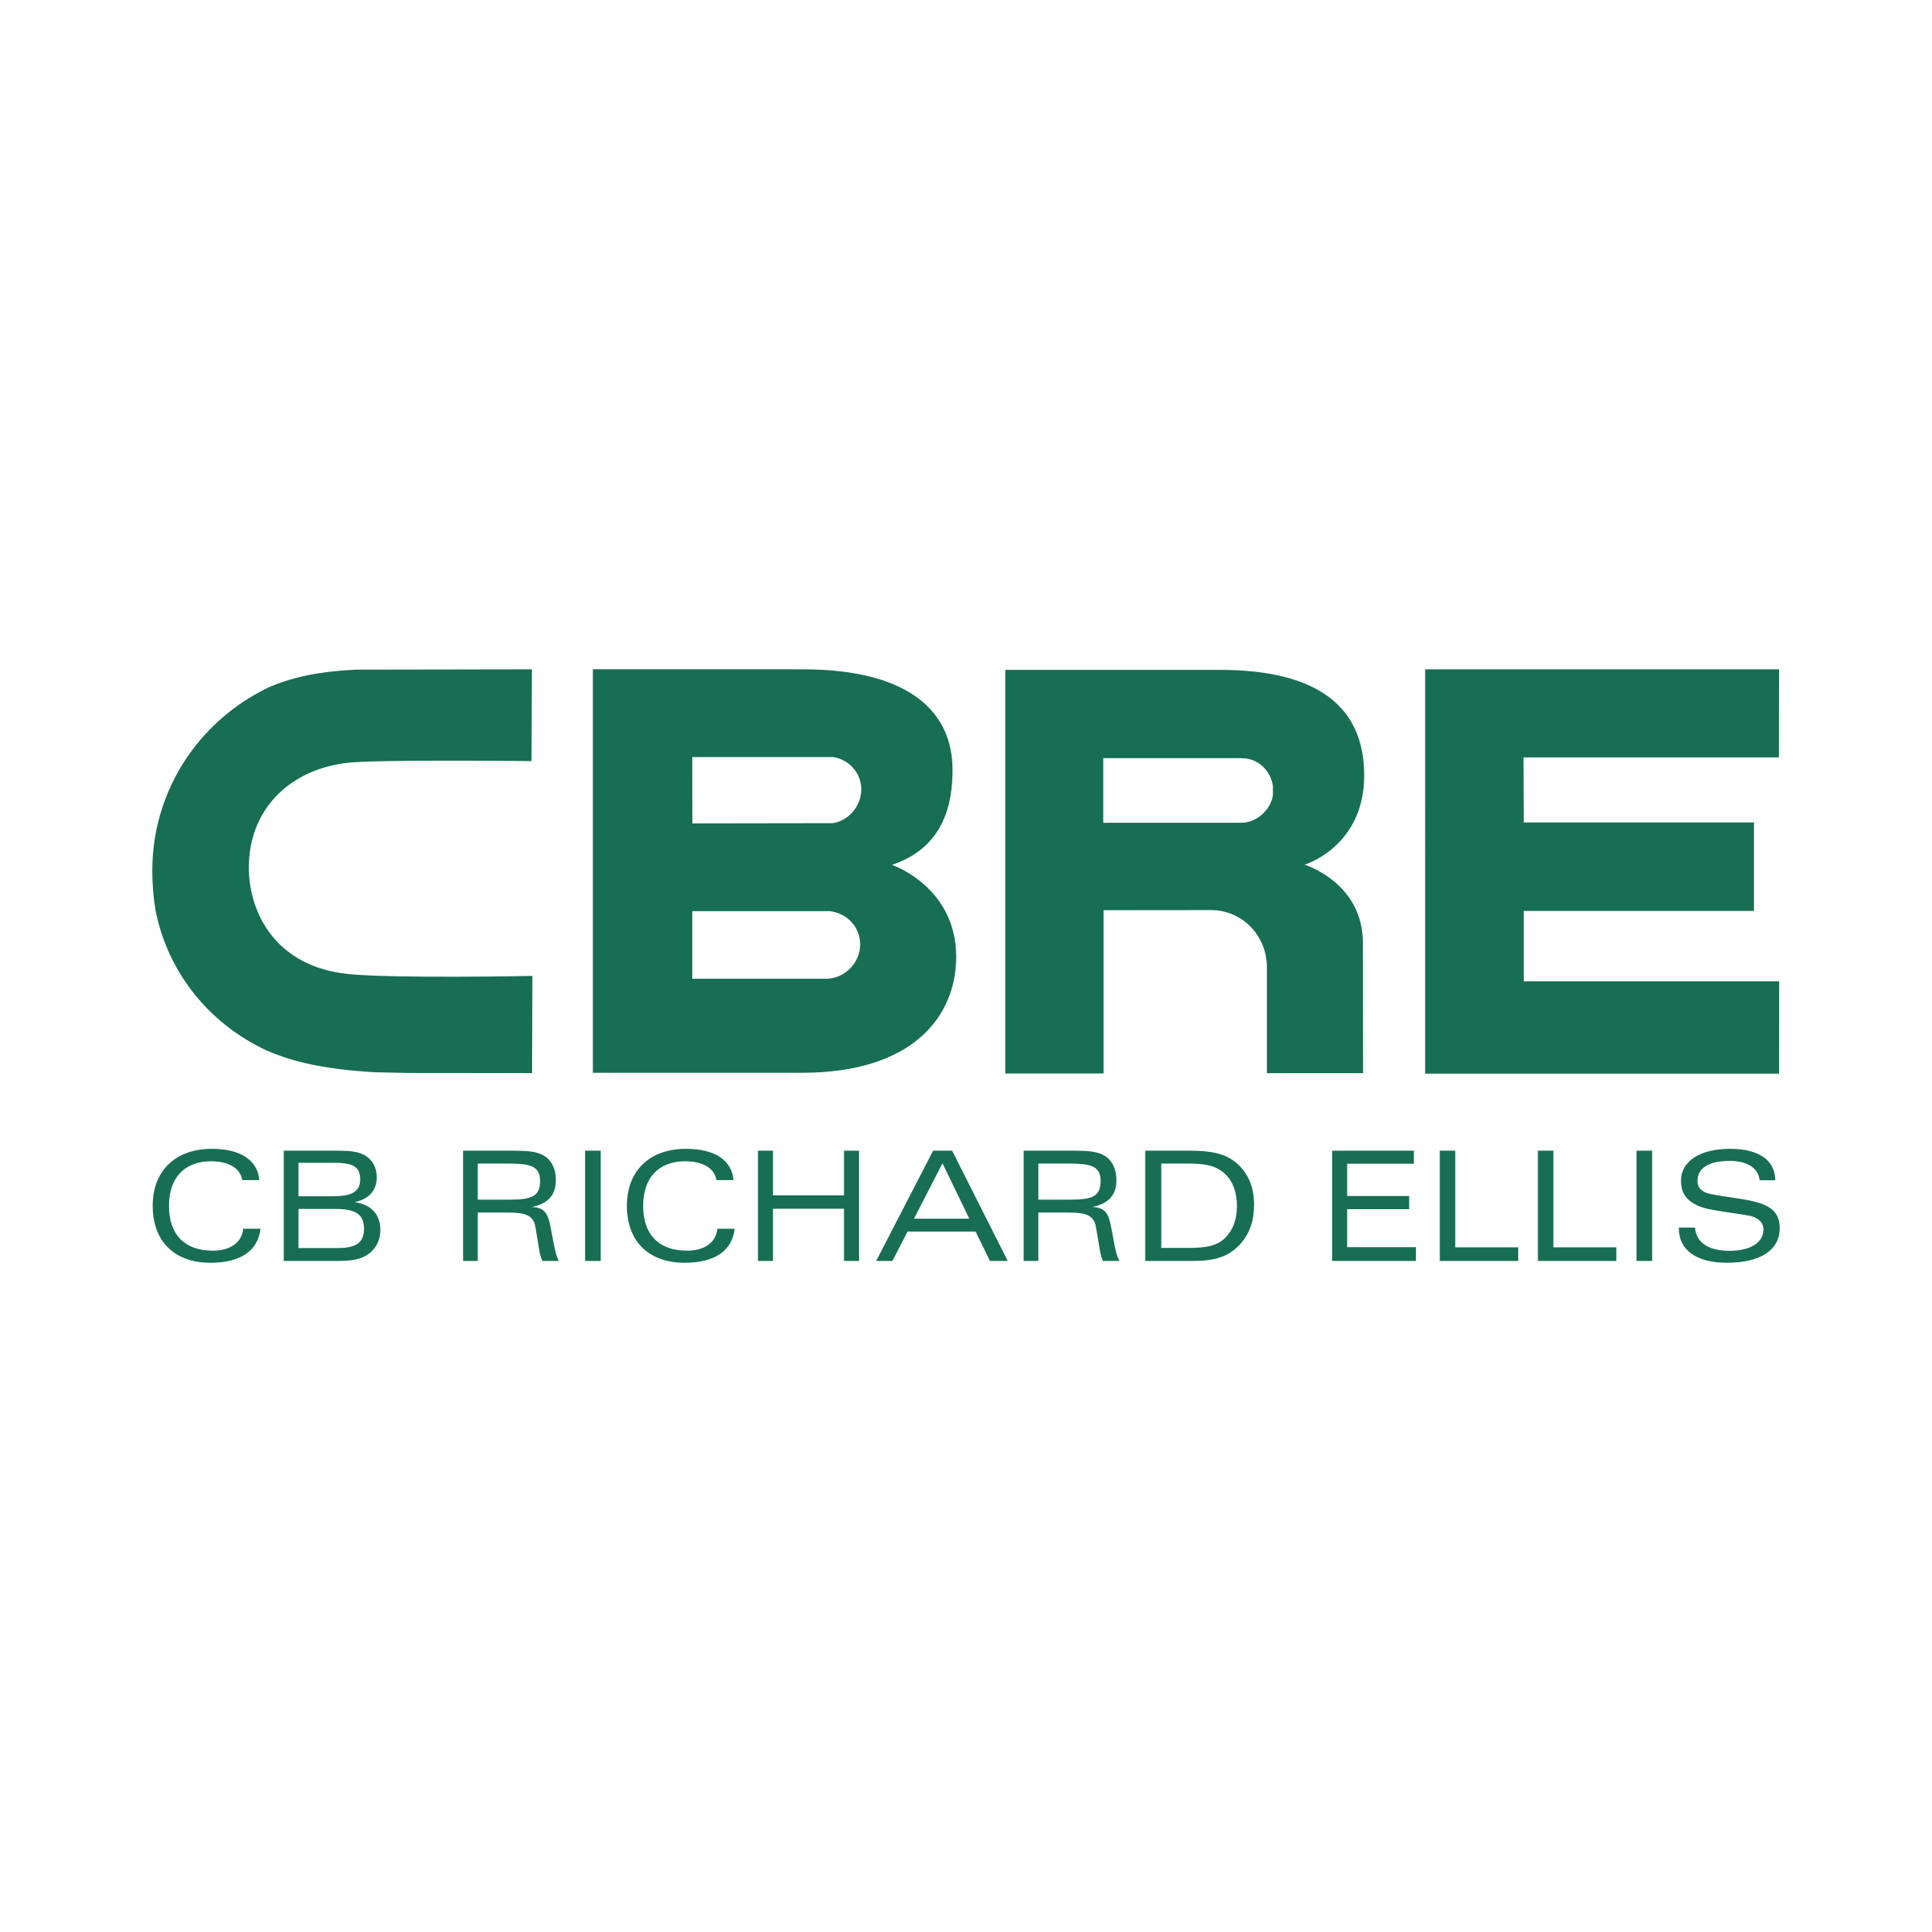 CB Richard Ellis- Construction Management Project